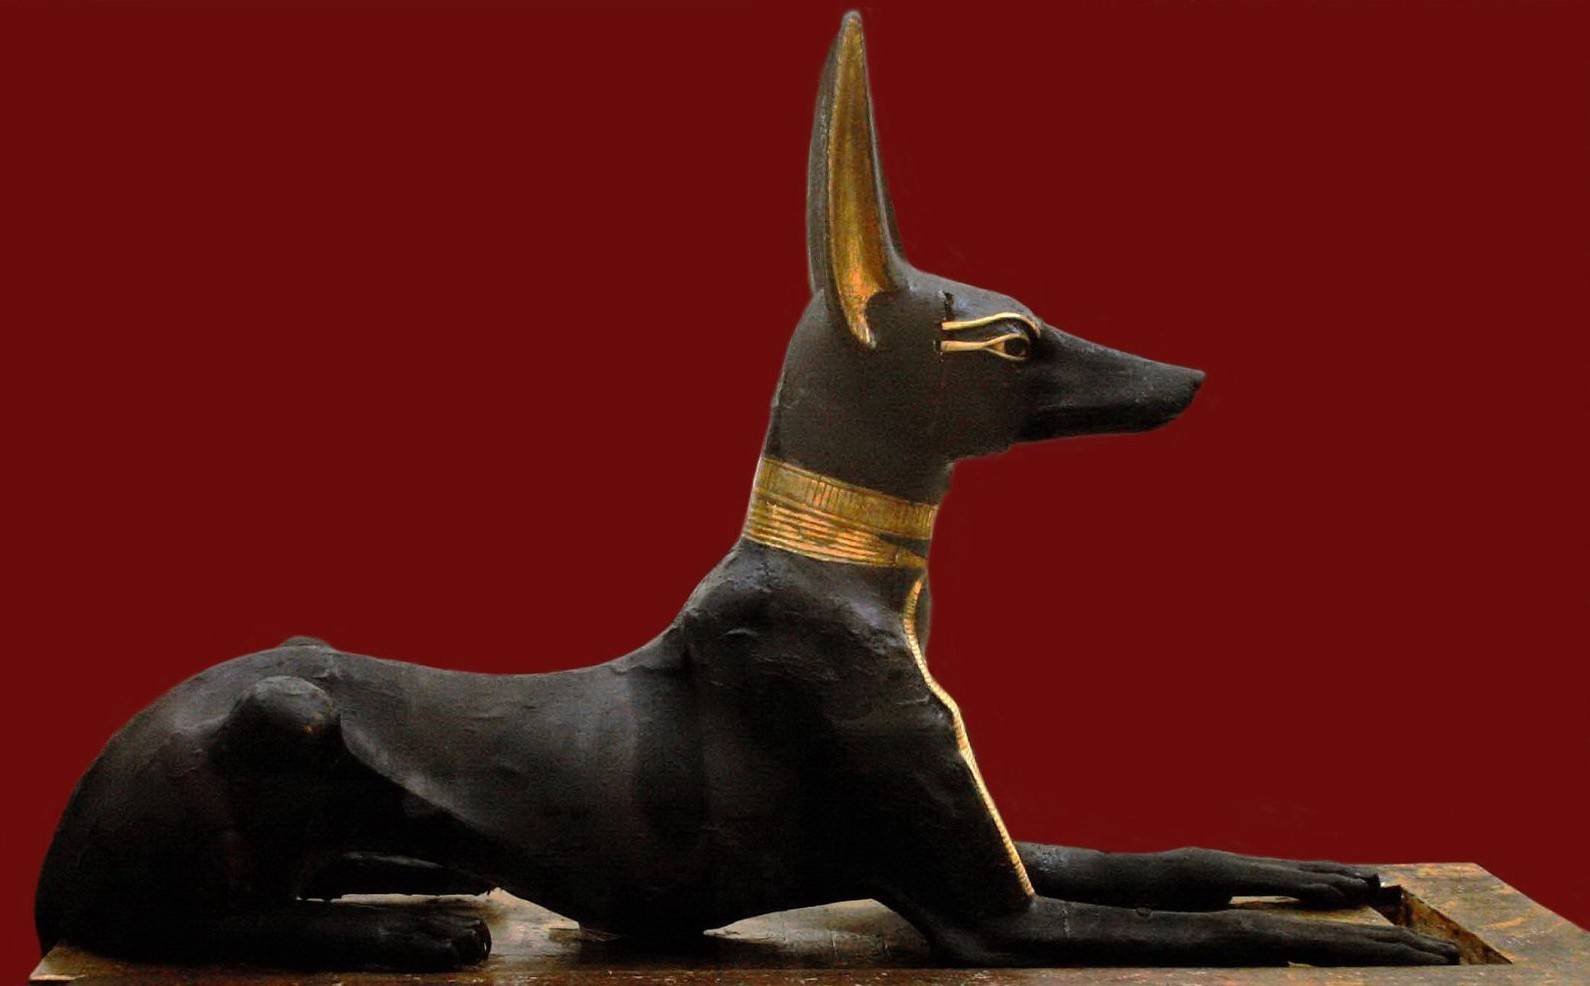 Фараонова собака: энергичный пес для охоты и преданный домашний любимец